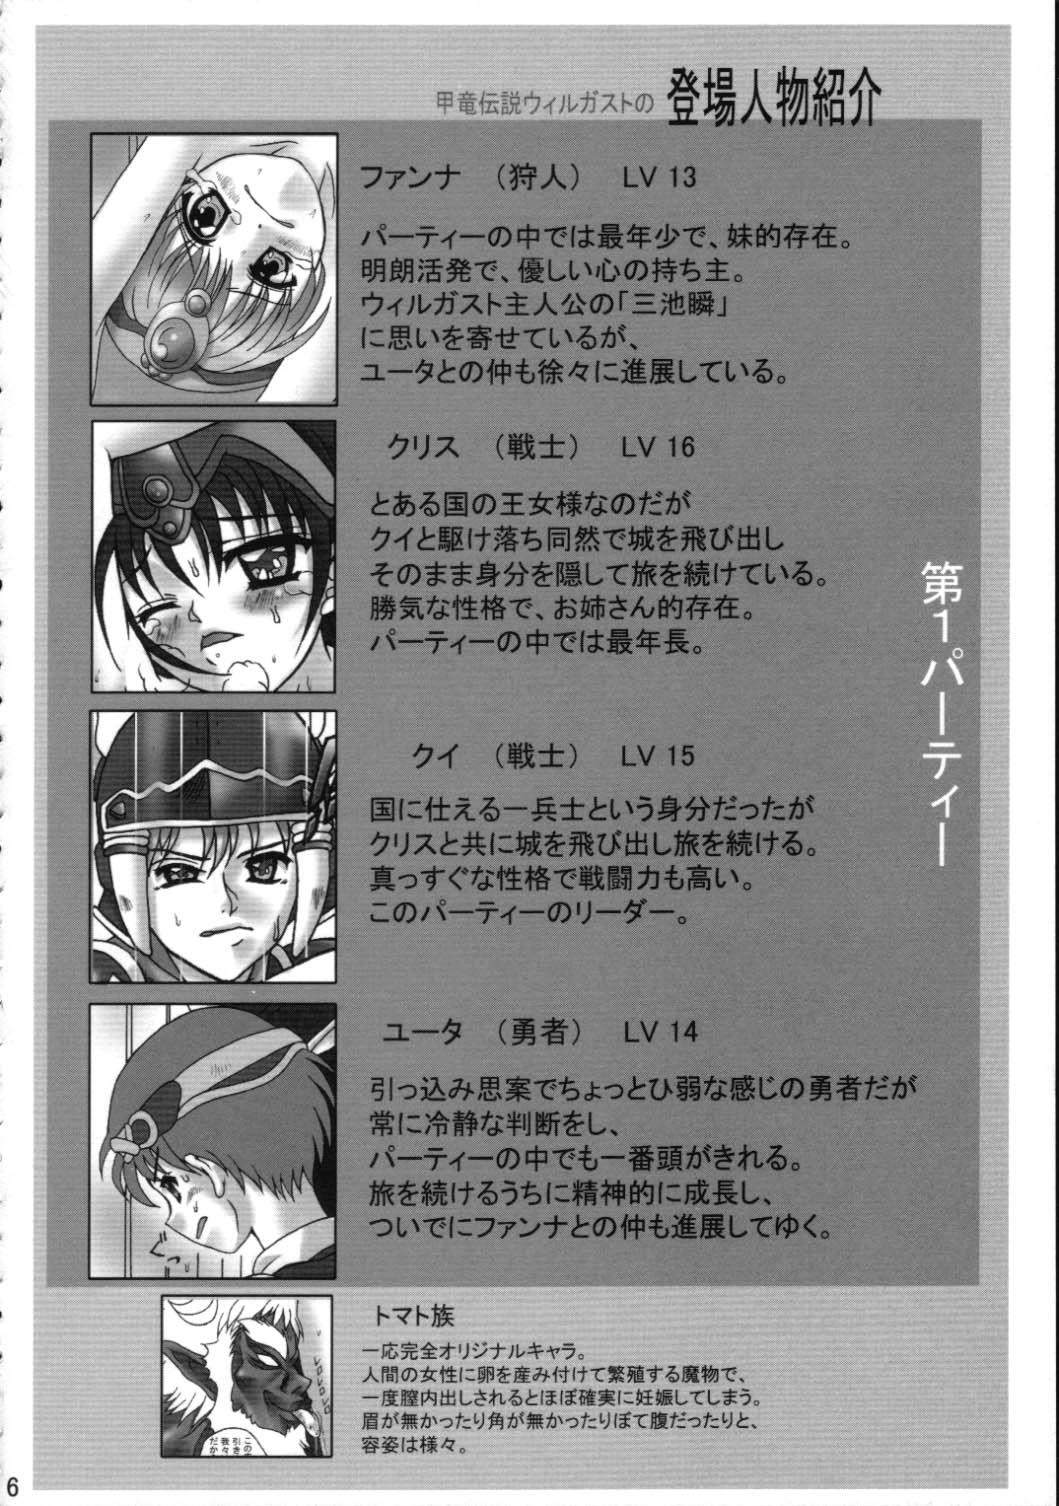 Leite Toraware no Shoujo - Kouryuu densetsu villgust Ballbusting - Page 5